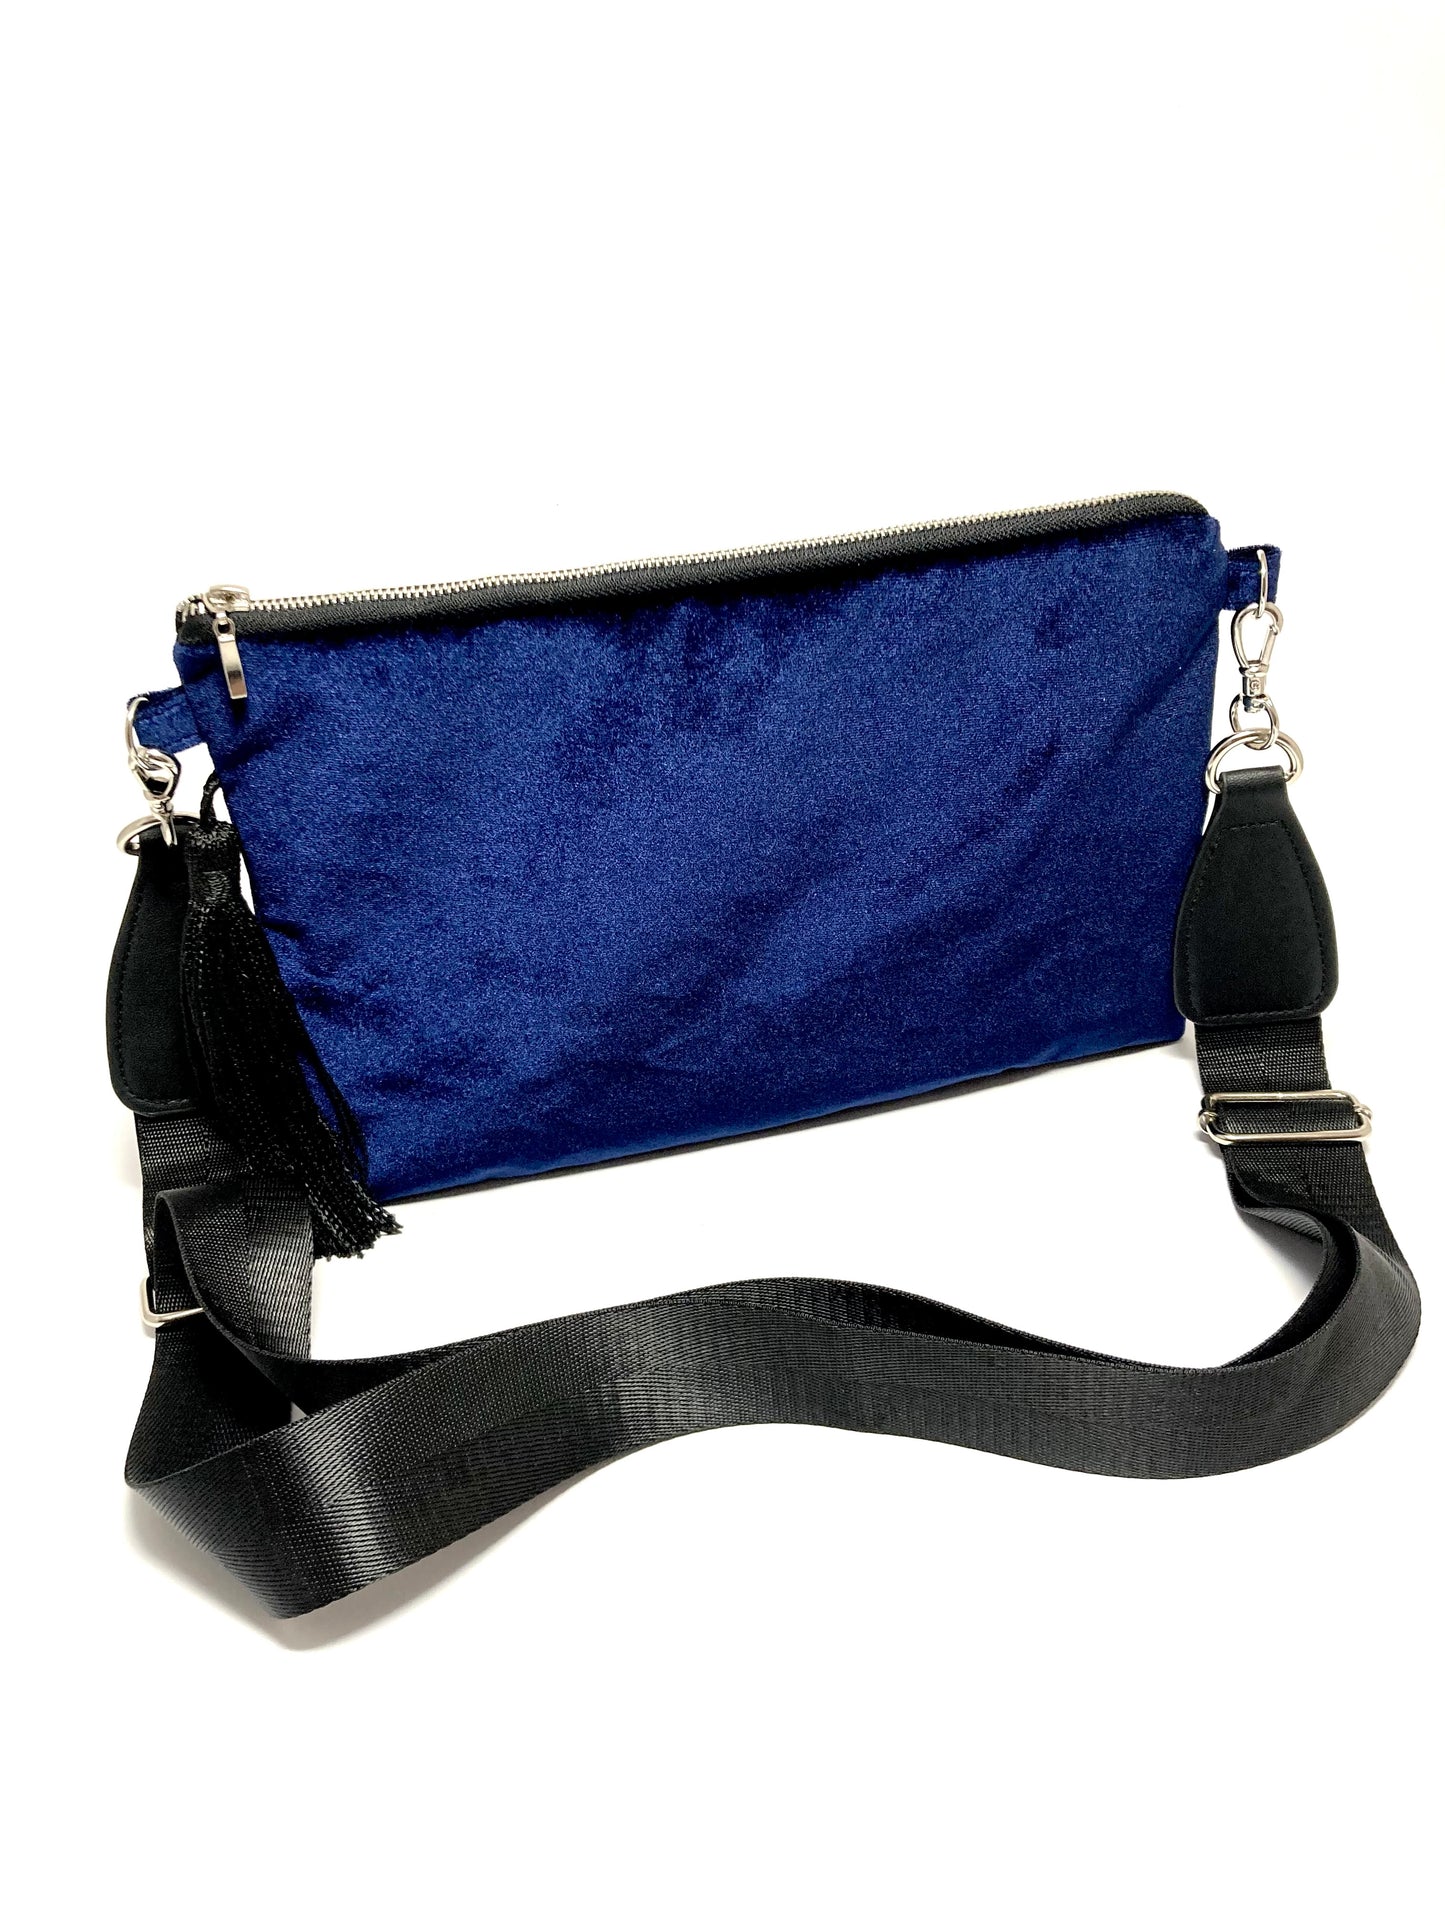 Blue velvet upcycled bag with tassel